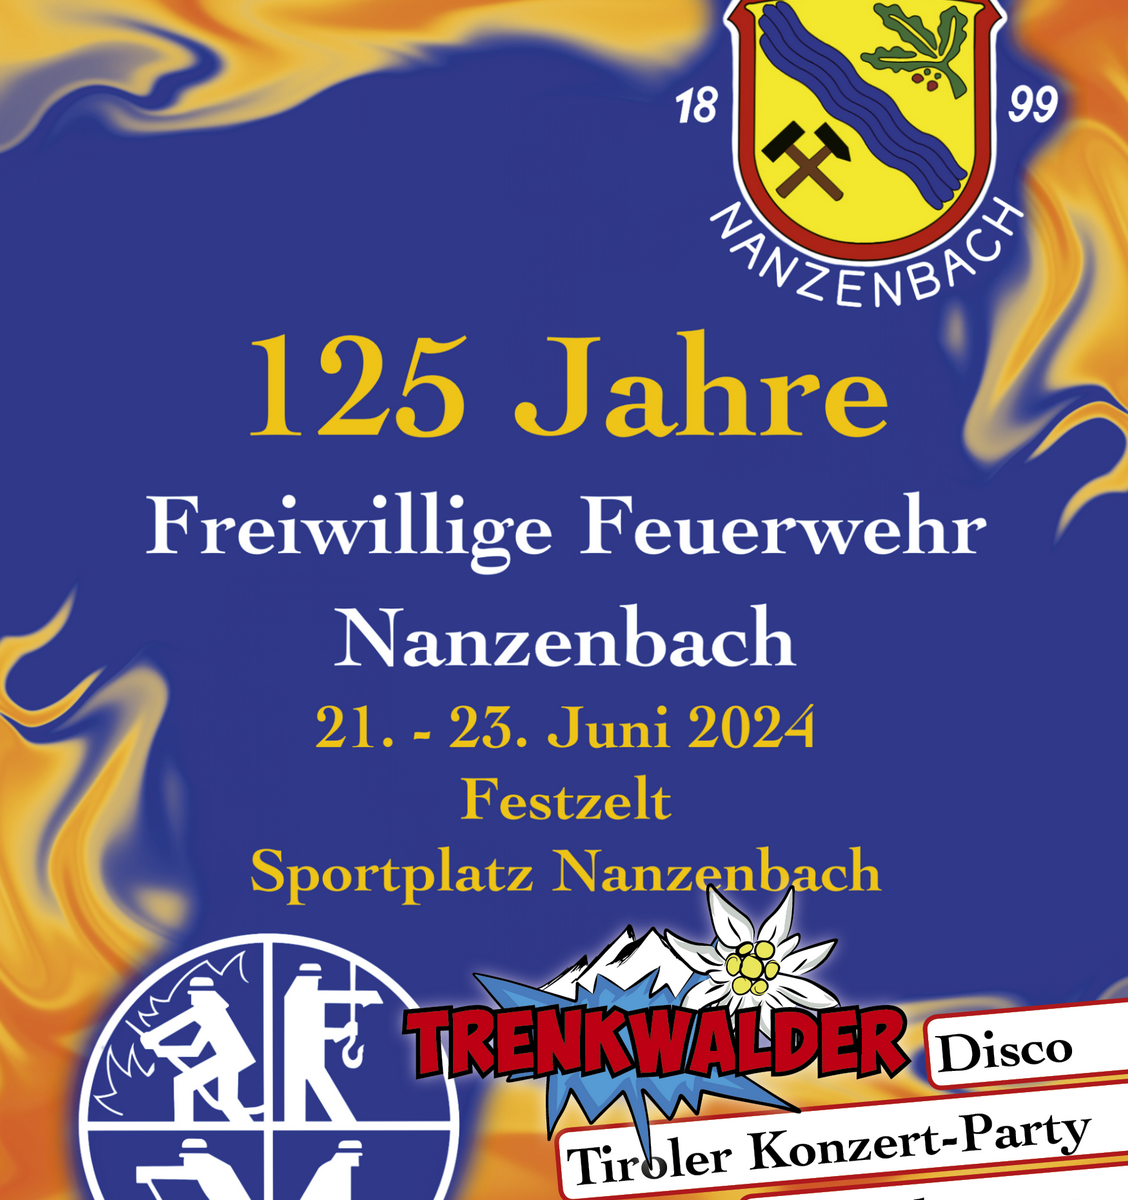 Bild vom Flyer zur Jubiläumsveranstaltung 125 Jahre Freiwillige Feuerwehr Nanzenbach. Mit Klick aufs Bild gehts zur Veranstaltung.